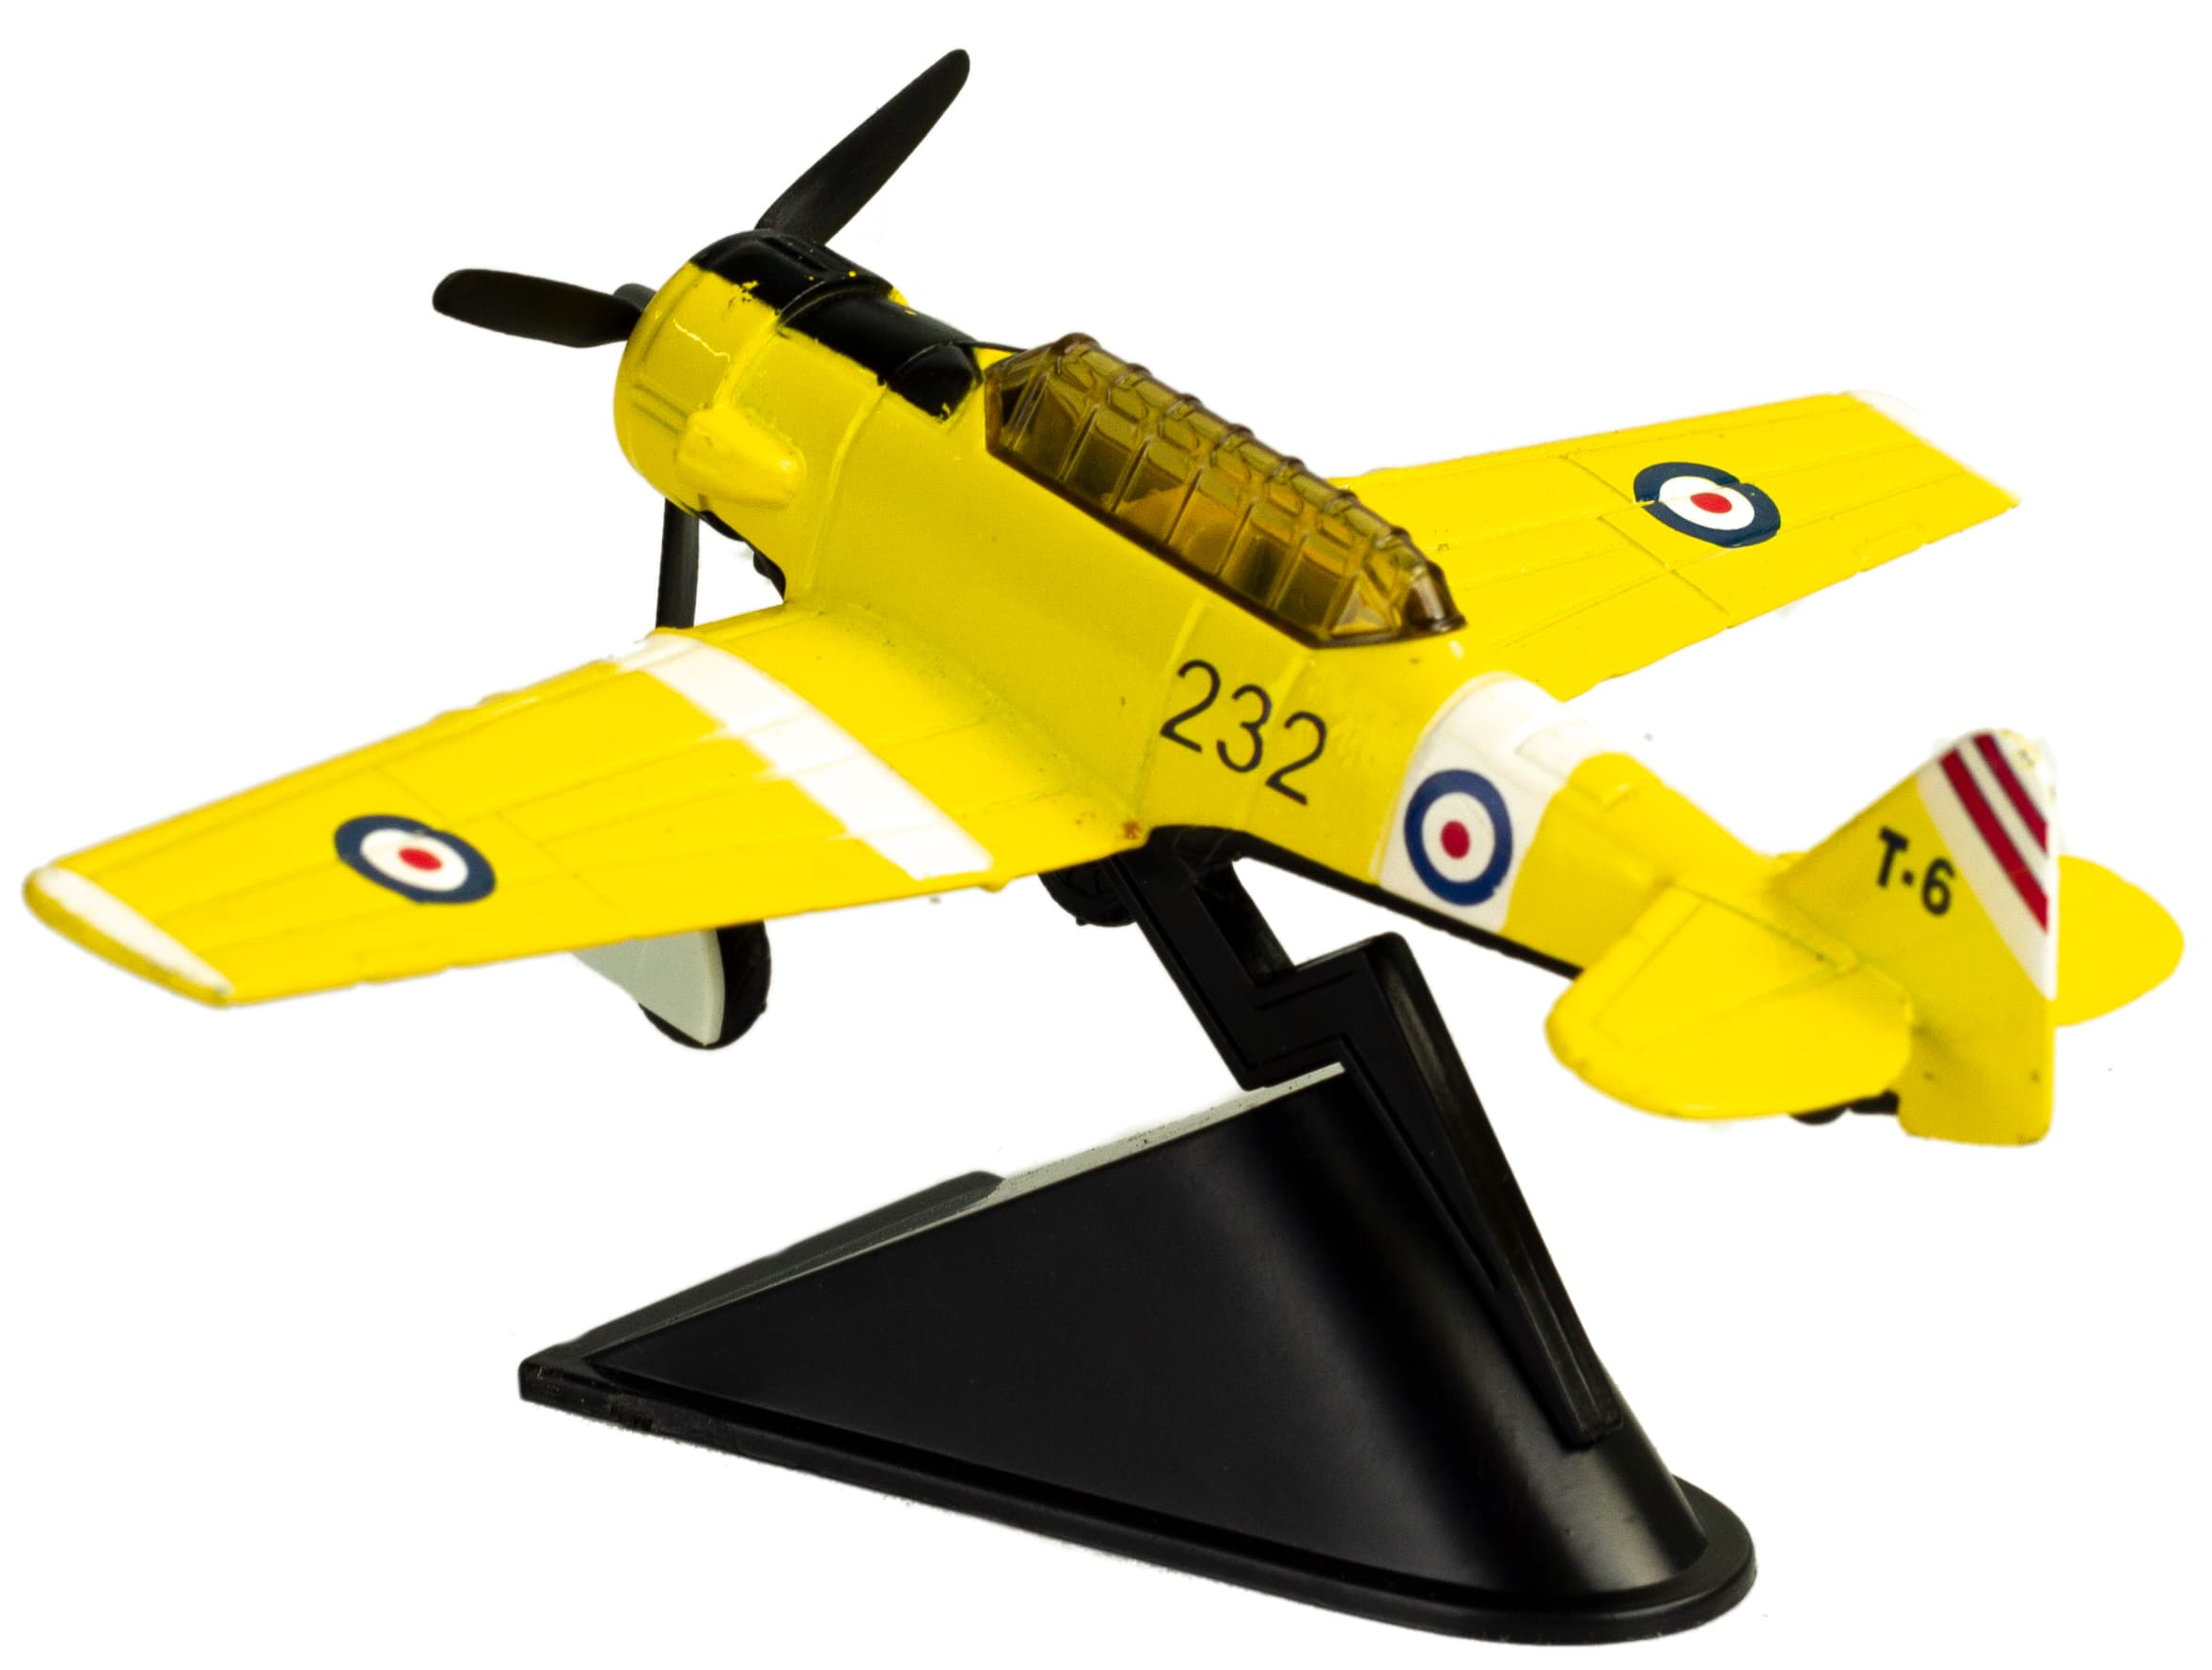 Металлическая модель военного самолета-истребителя «Classic Fighter. PX» 10 см. F8211012B, винтовой, на подставке / Желтый